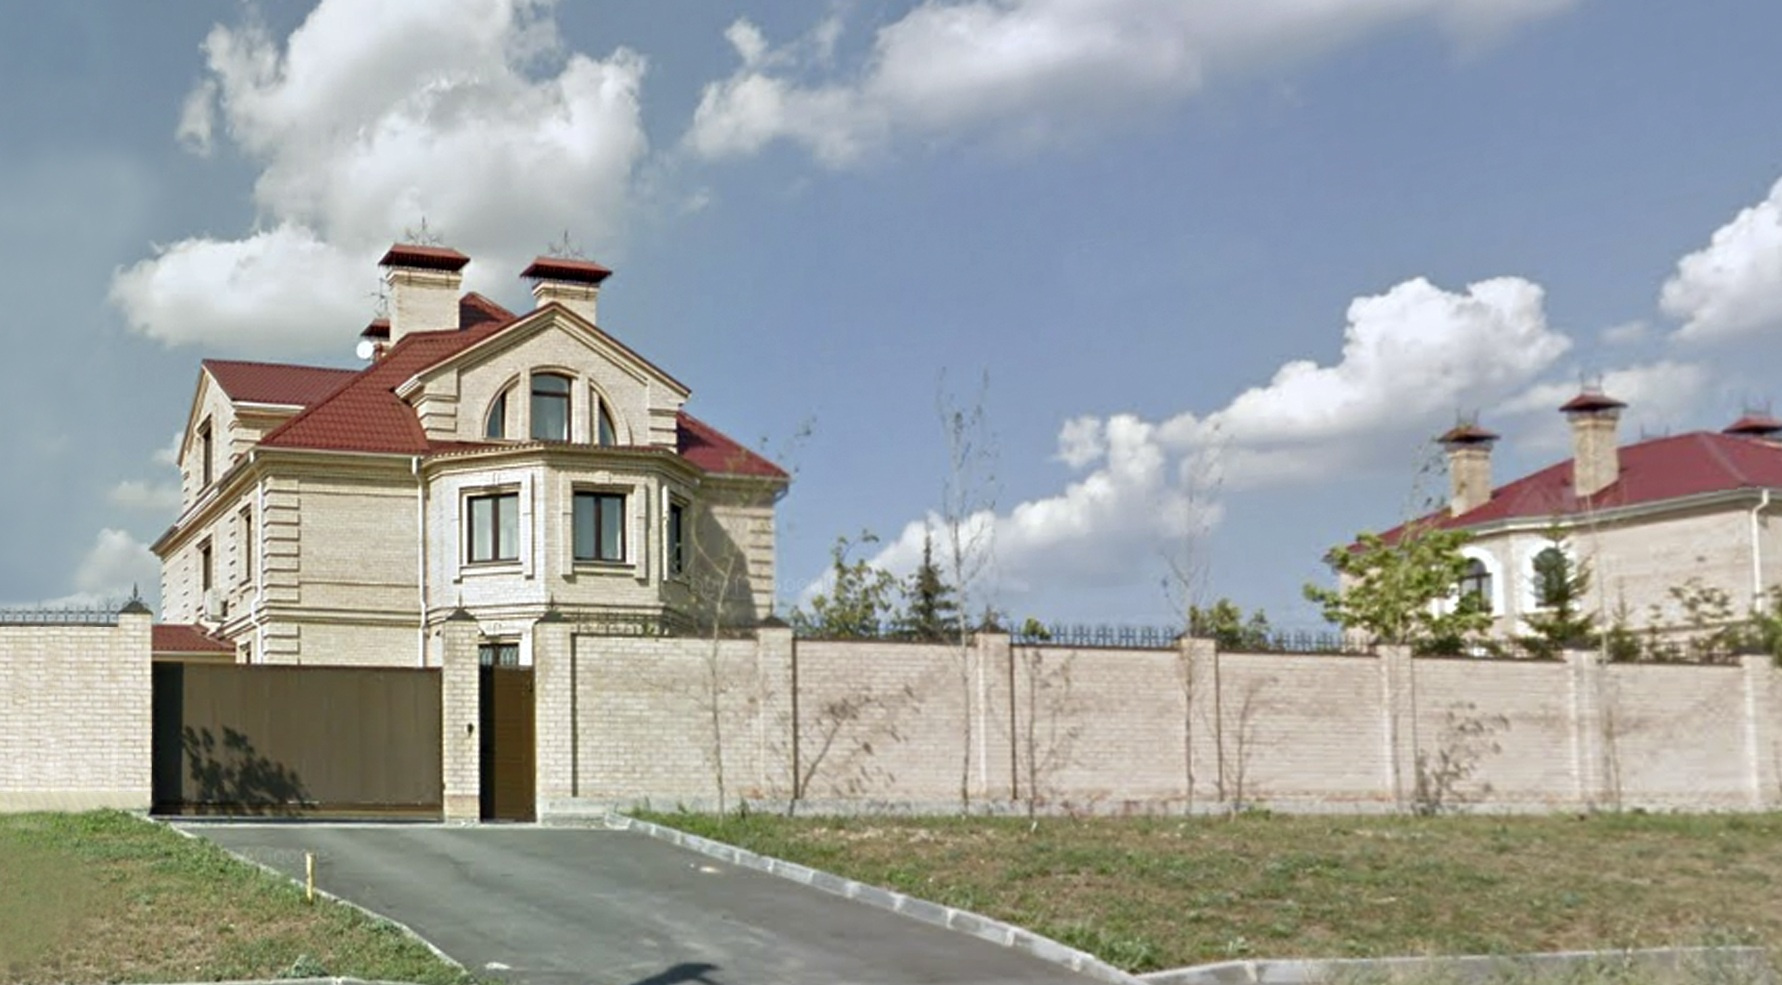 По адресу арестованного дома Давыдова карты Google выдают вот этот особняк на берегу Изумрудного карьера